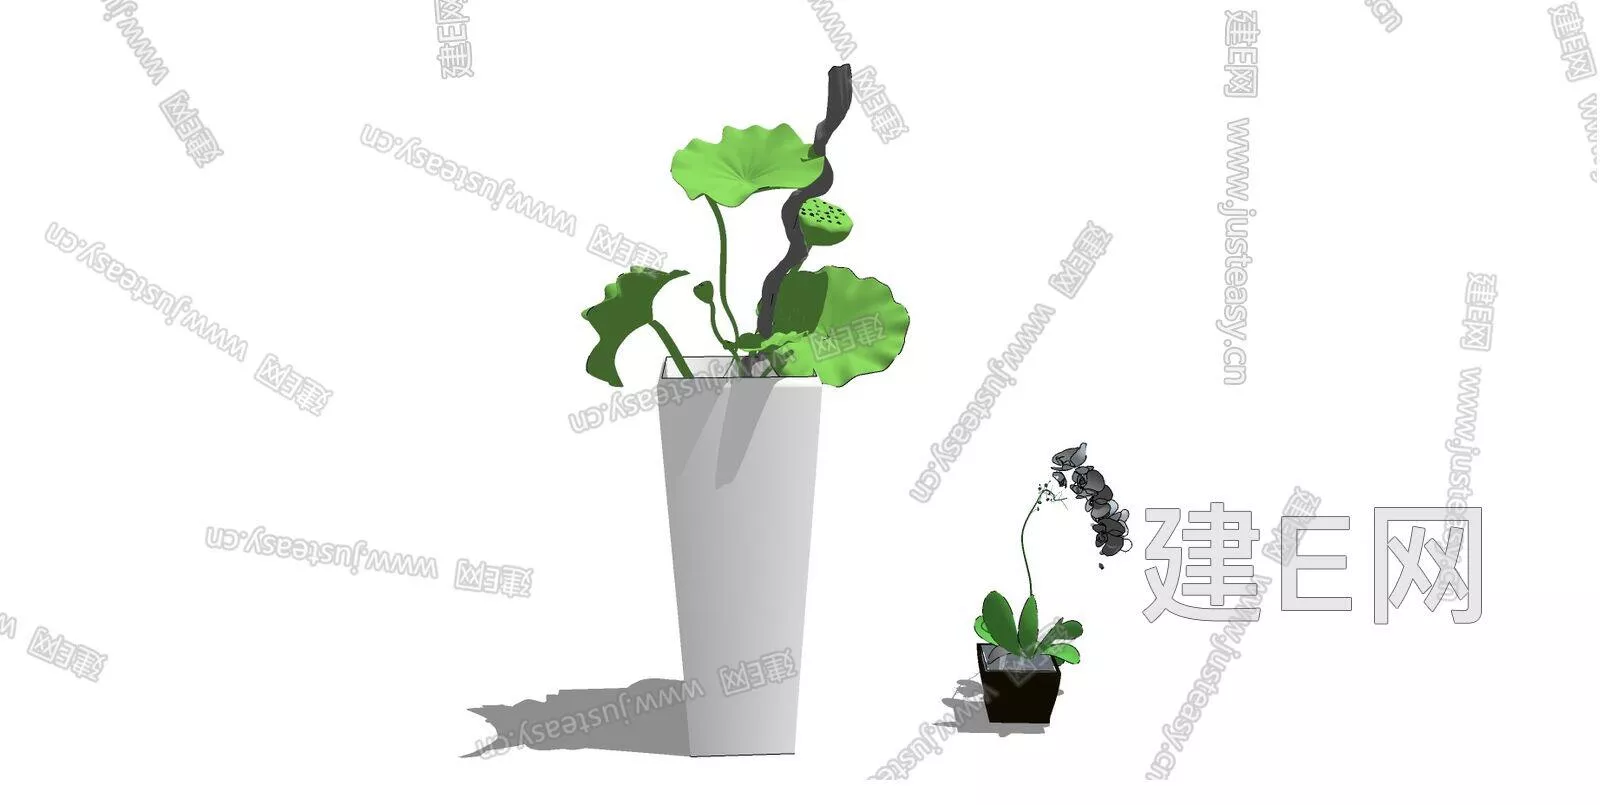 MODERN POTTED PLANT - SKETCHUP 3D MODEL - ENSCAPE - 112476566